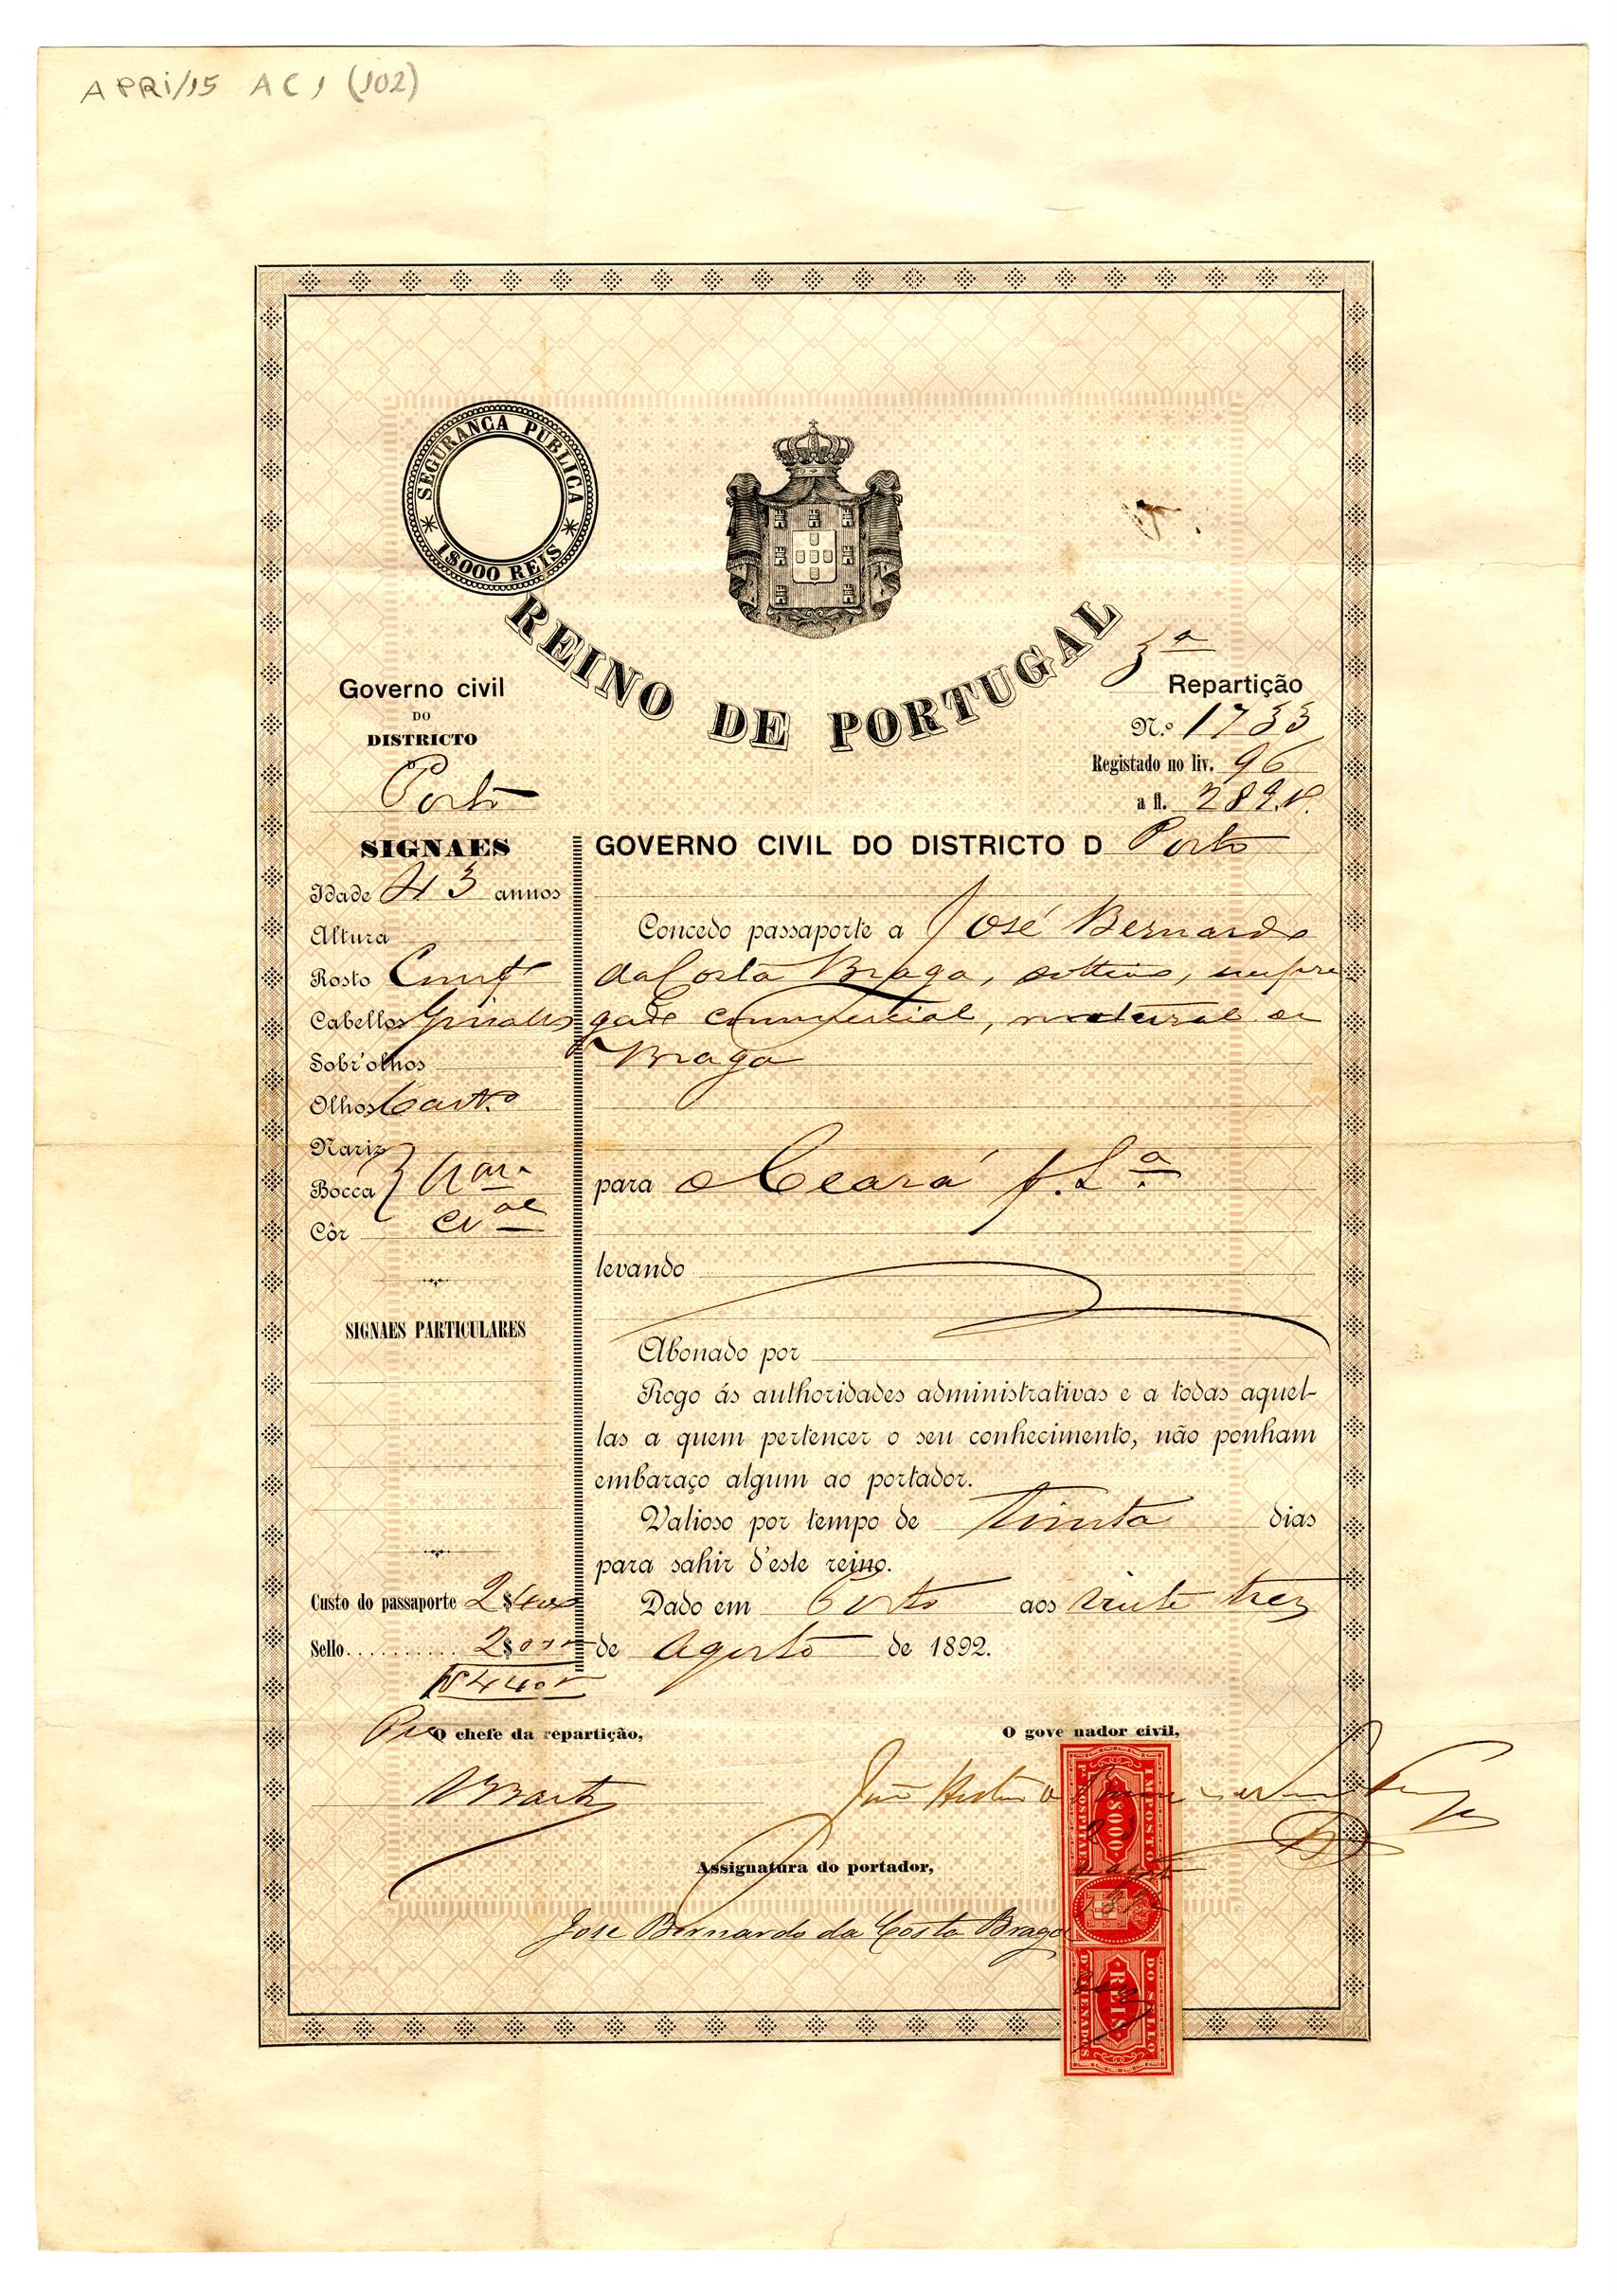 Passaporte de José Bernardo da Costa Braga